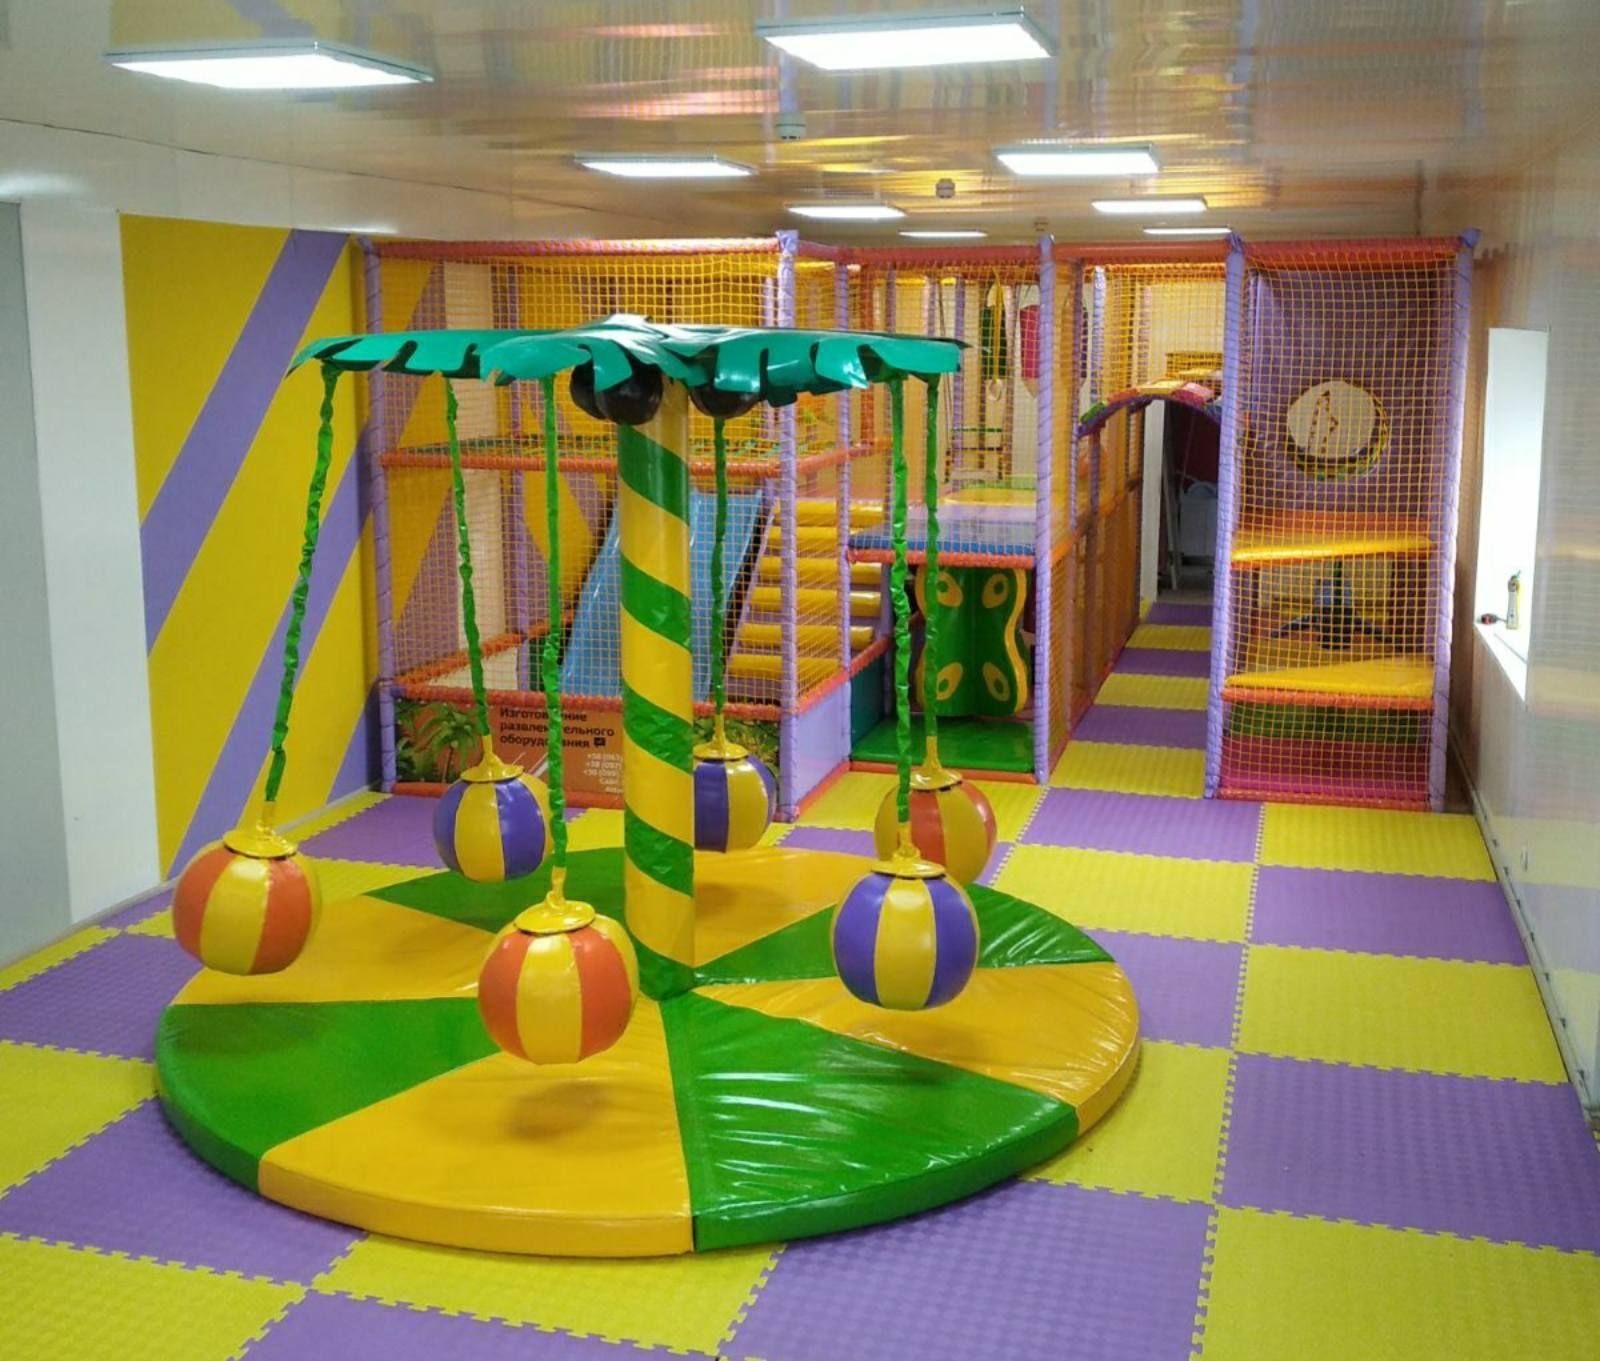 Детские лабиринты батуты карусели модули полы в игровую комнату